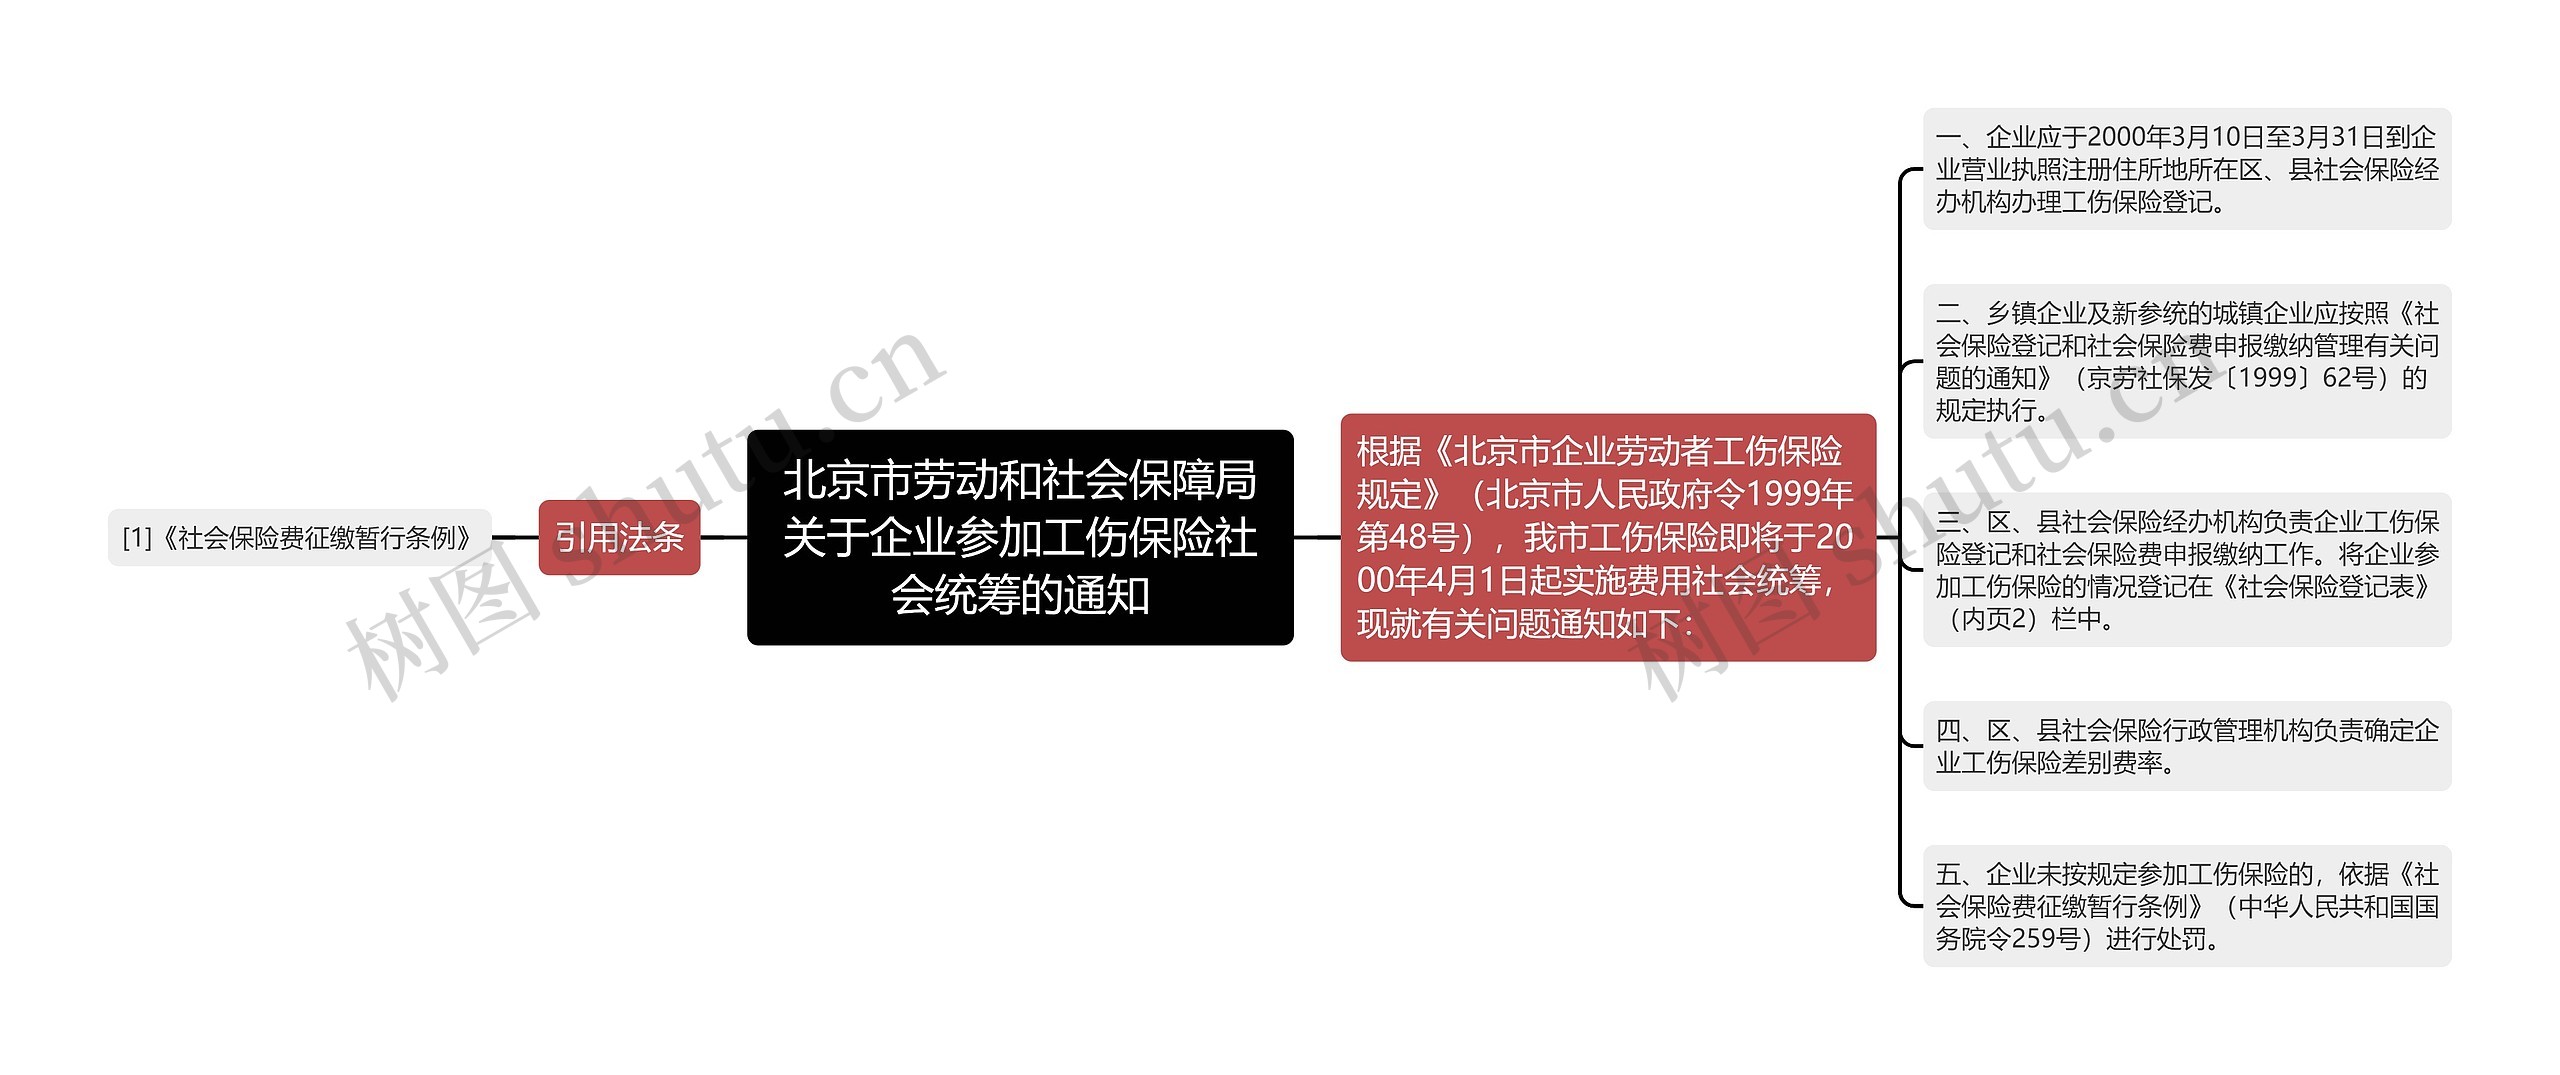 北京市劳动和社会保障局关于企业参加工伤保险社会统筹的通知